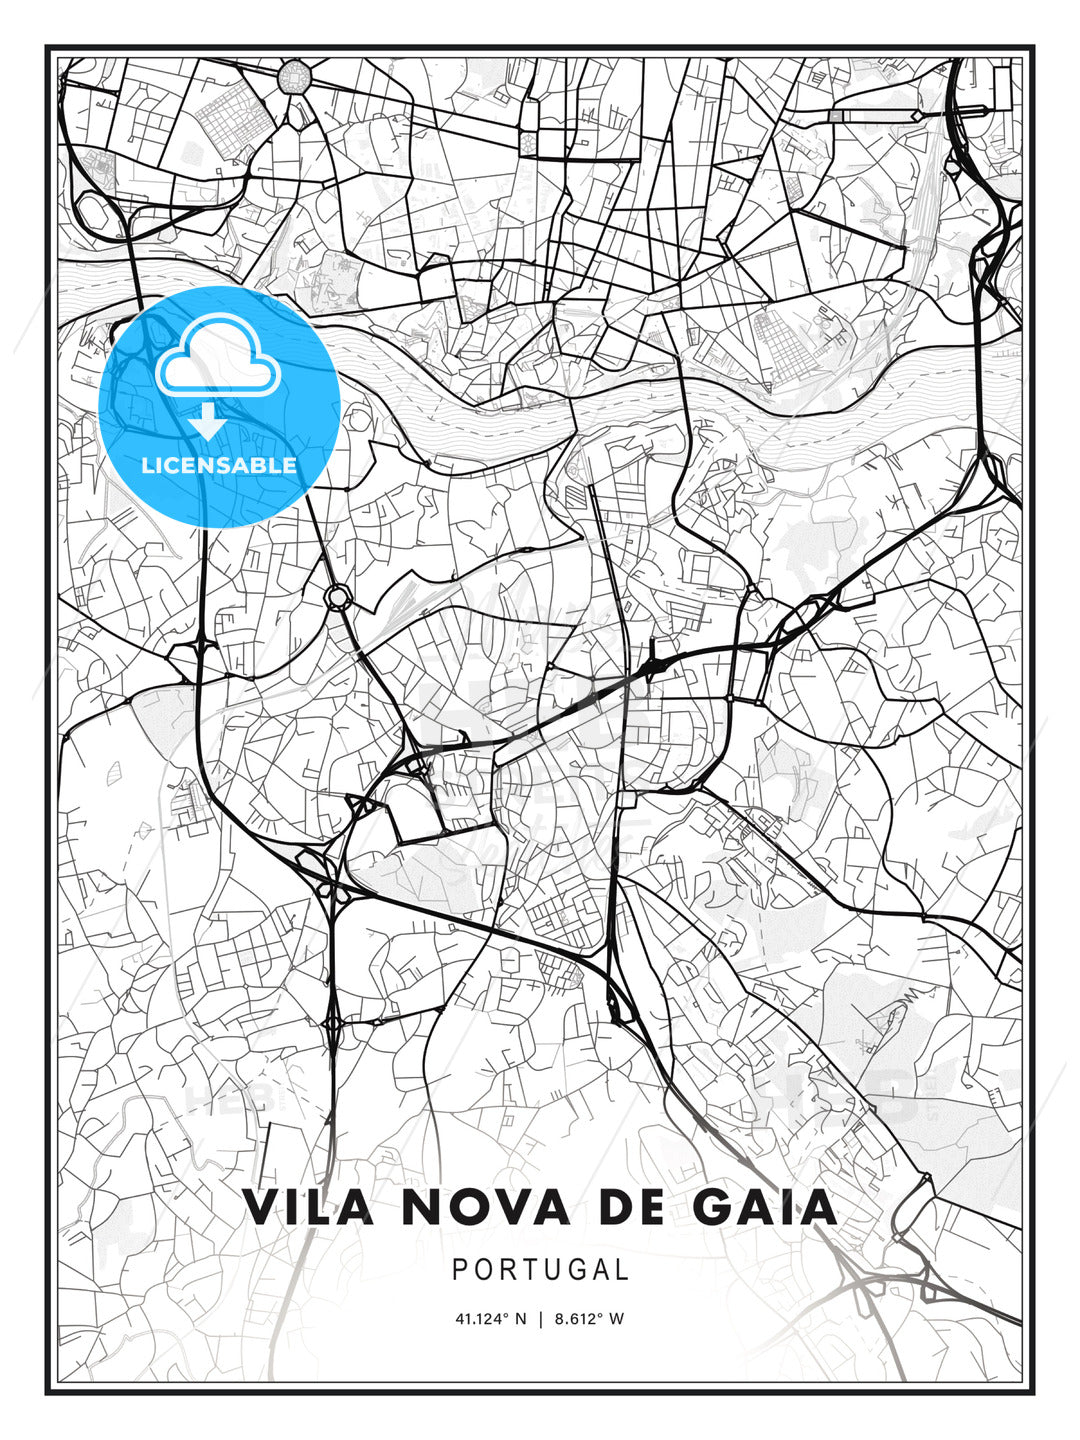 Vila Nova de Gaia, Portugal, Modern Print Template in Various Formats - HEBSTREITS Sketches